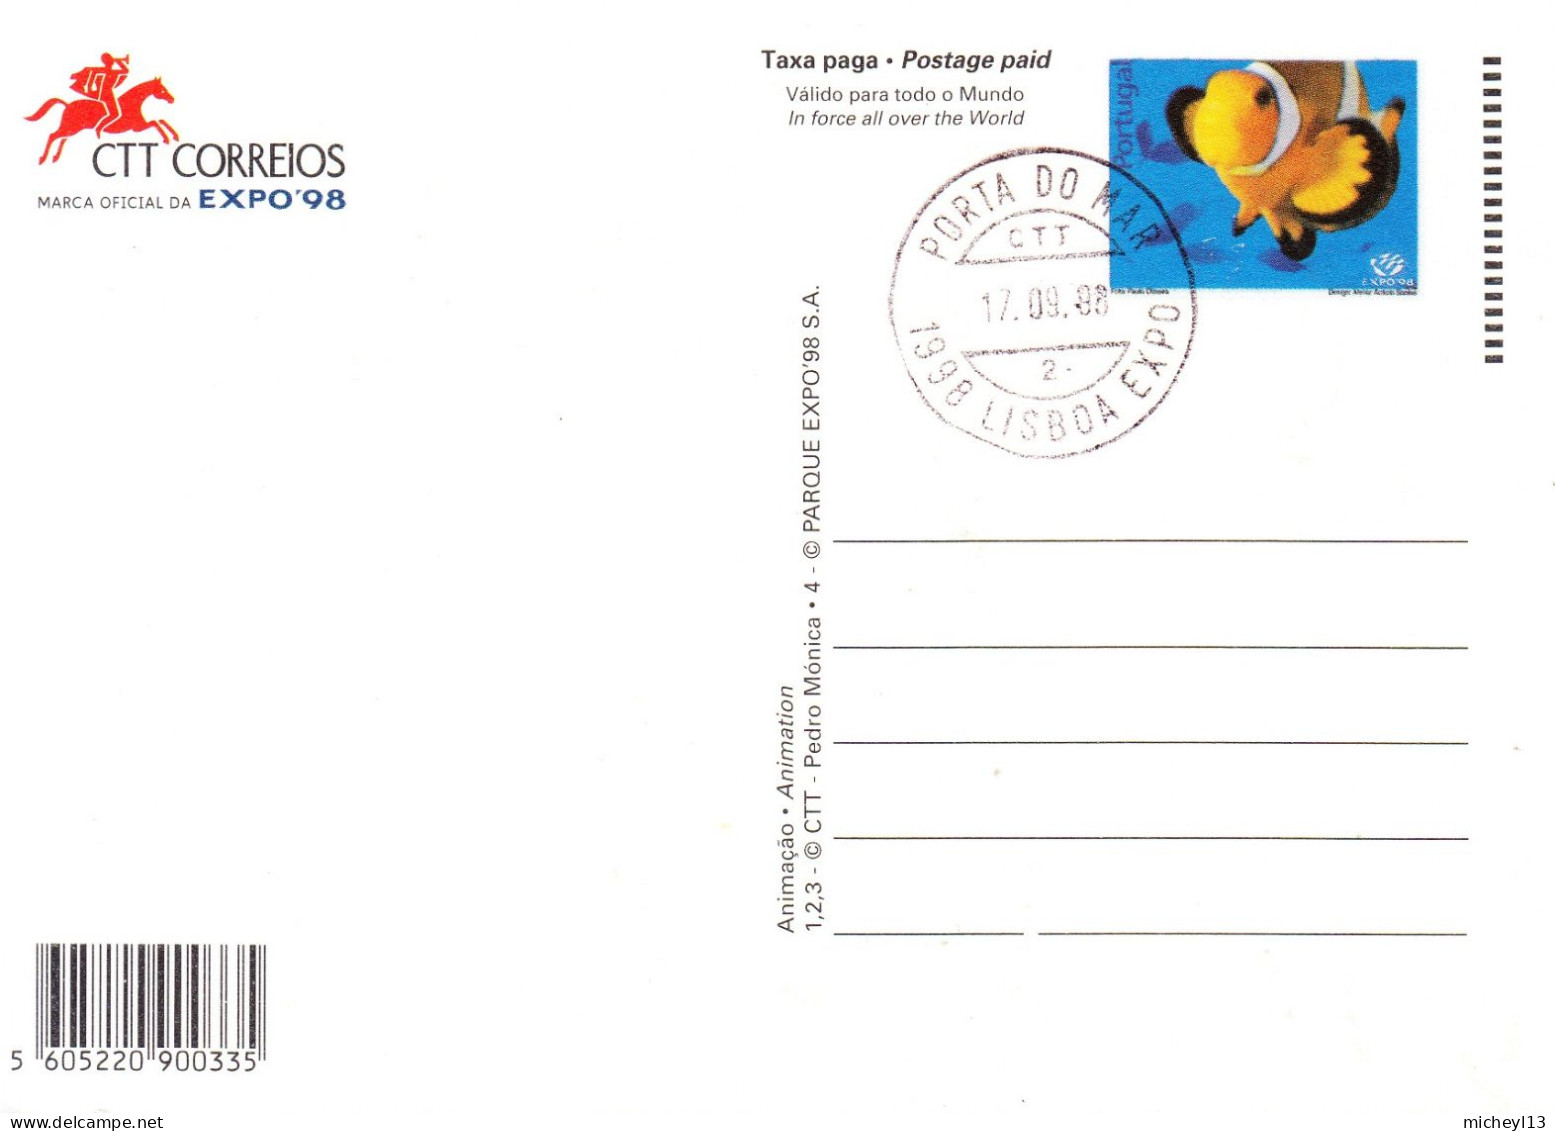 Portugal-1998-4 entiers postaux -EXPO 98 à Lisboa-Lisbonne-3 neufs et un oblitéré  de Porta Do Mar